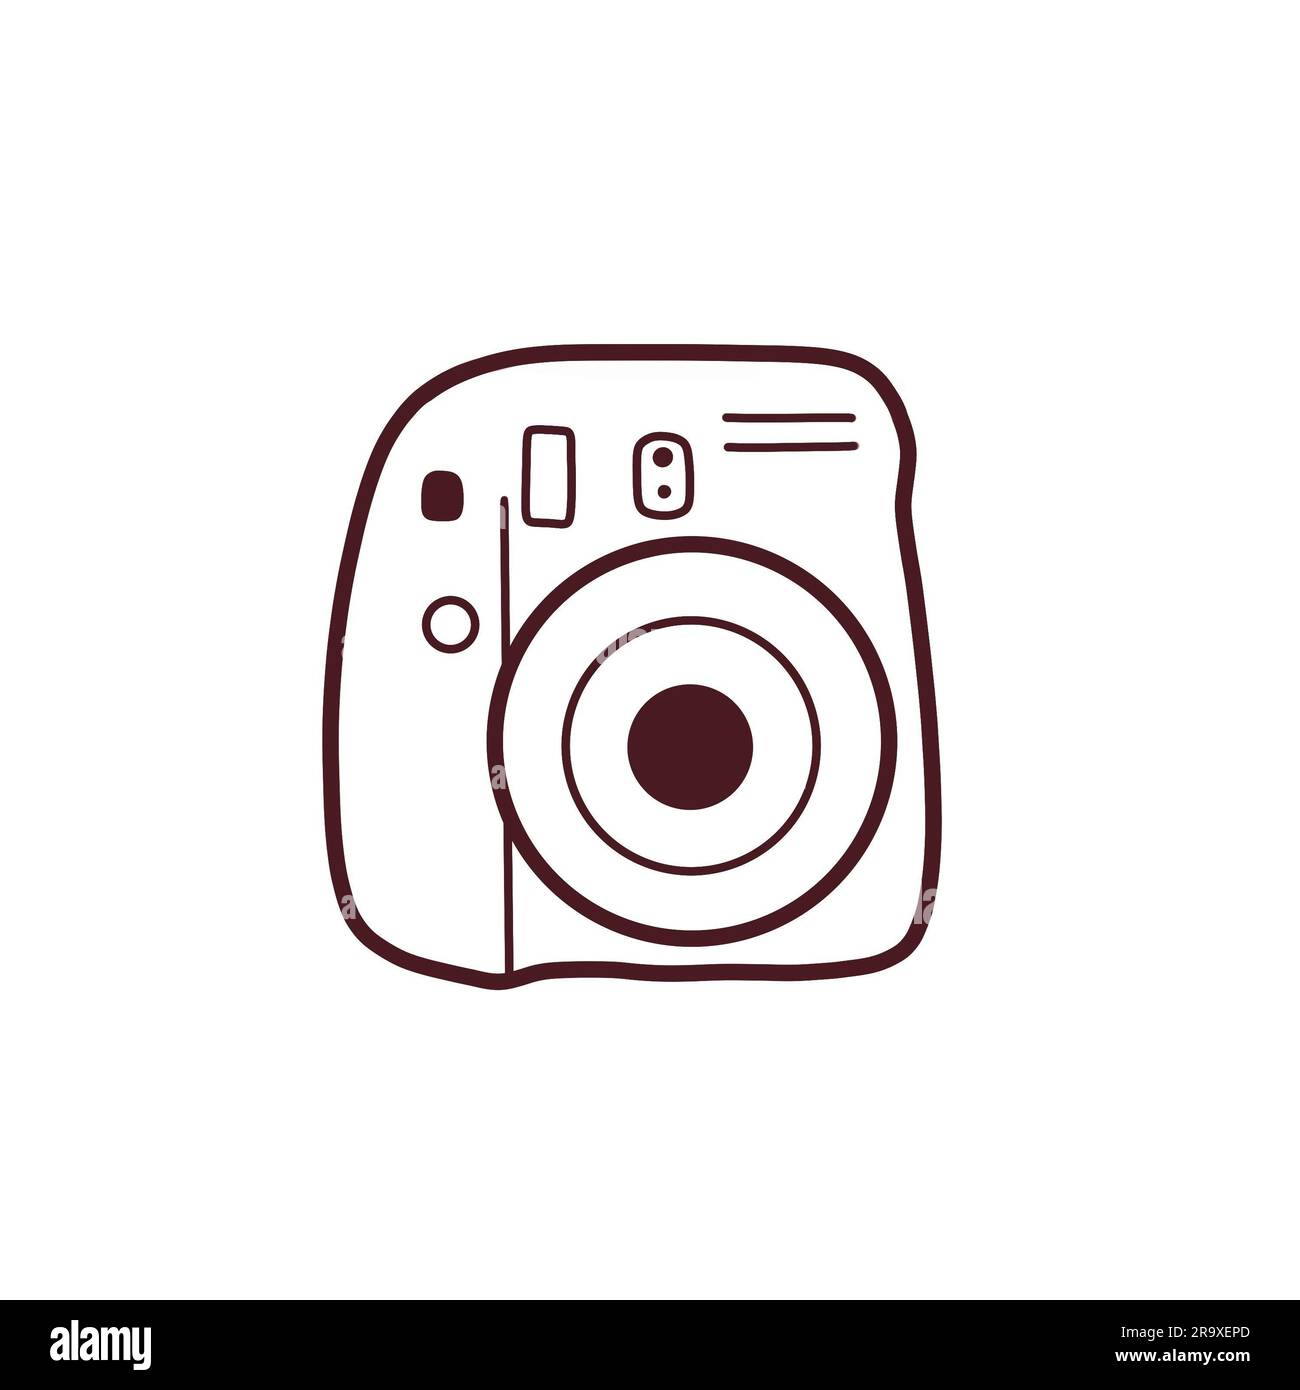 Fotocamera. Icona fotocamera. Icona per storie, siti e altri social network di Instagram. Foto Stock